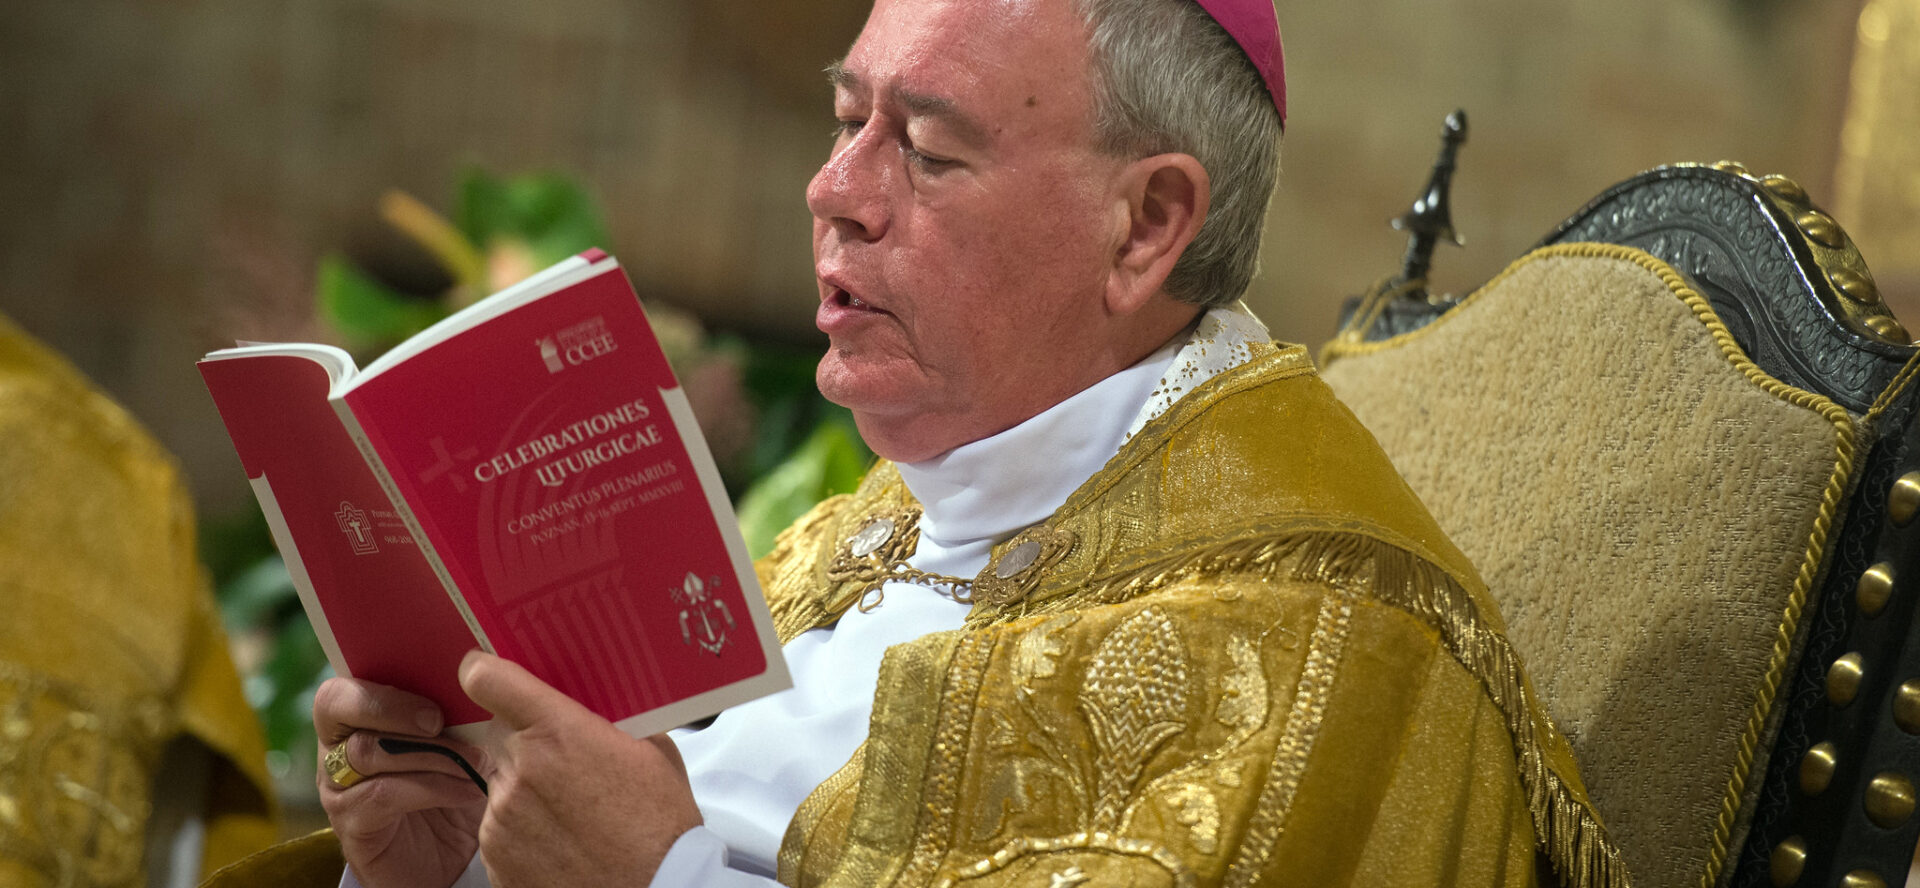 Le cardinal Jean-Claude Hollerich participe à la préparation de l'Instrumentum Laboris du Synode |   © Catholic Church of England and Wales/Flickr/CC BY-NC-ND 2.0